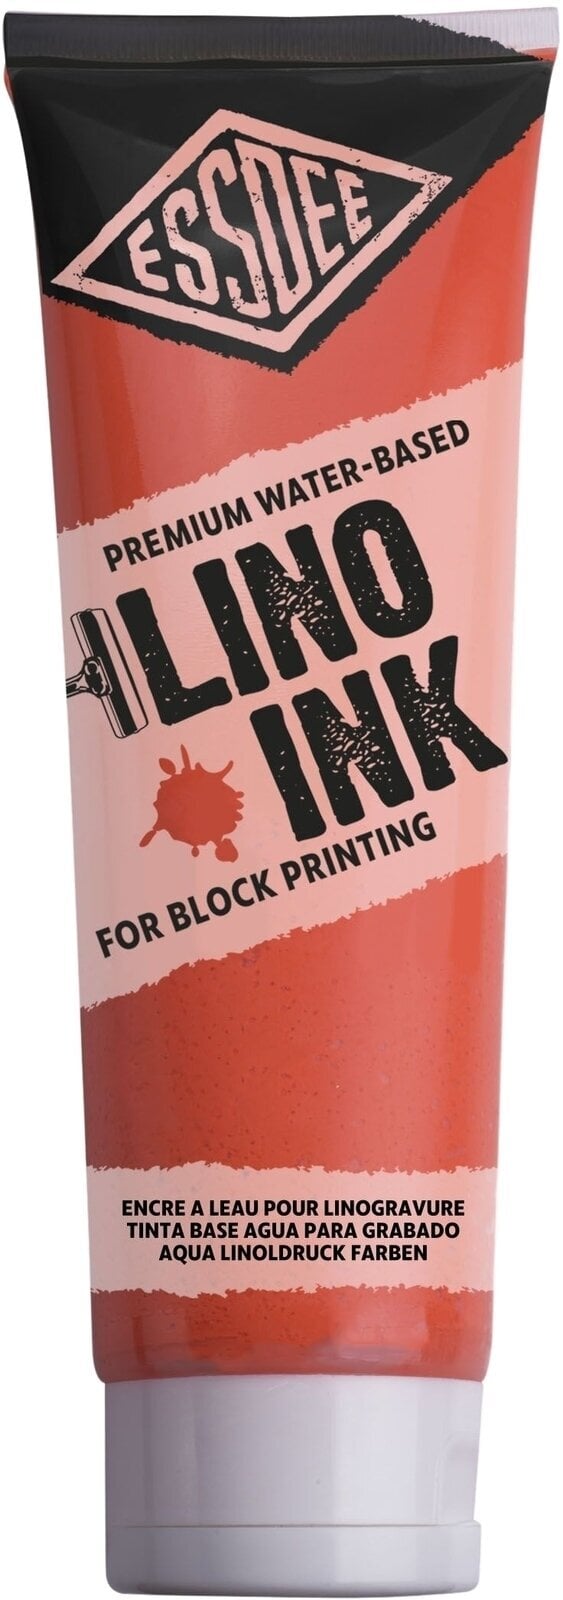 Boja za linorez Essdee Block Printing Ink Boja za linorez Fluorescent Orange 300 ml